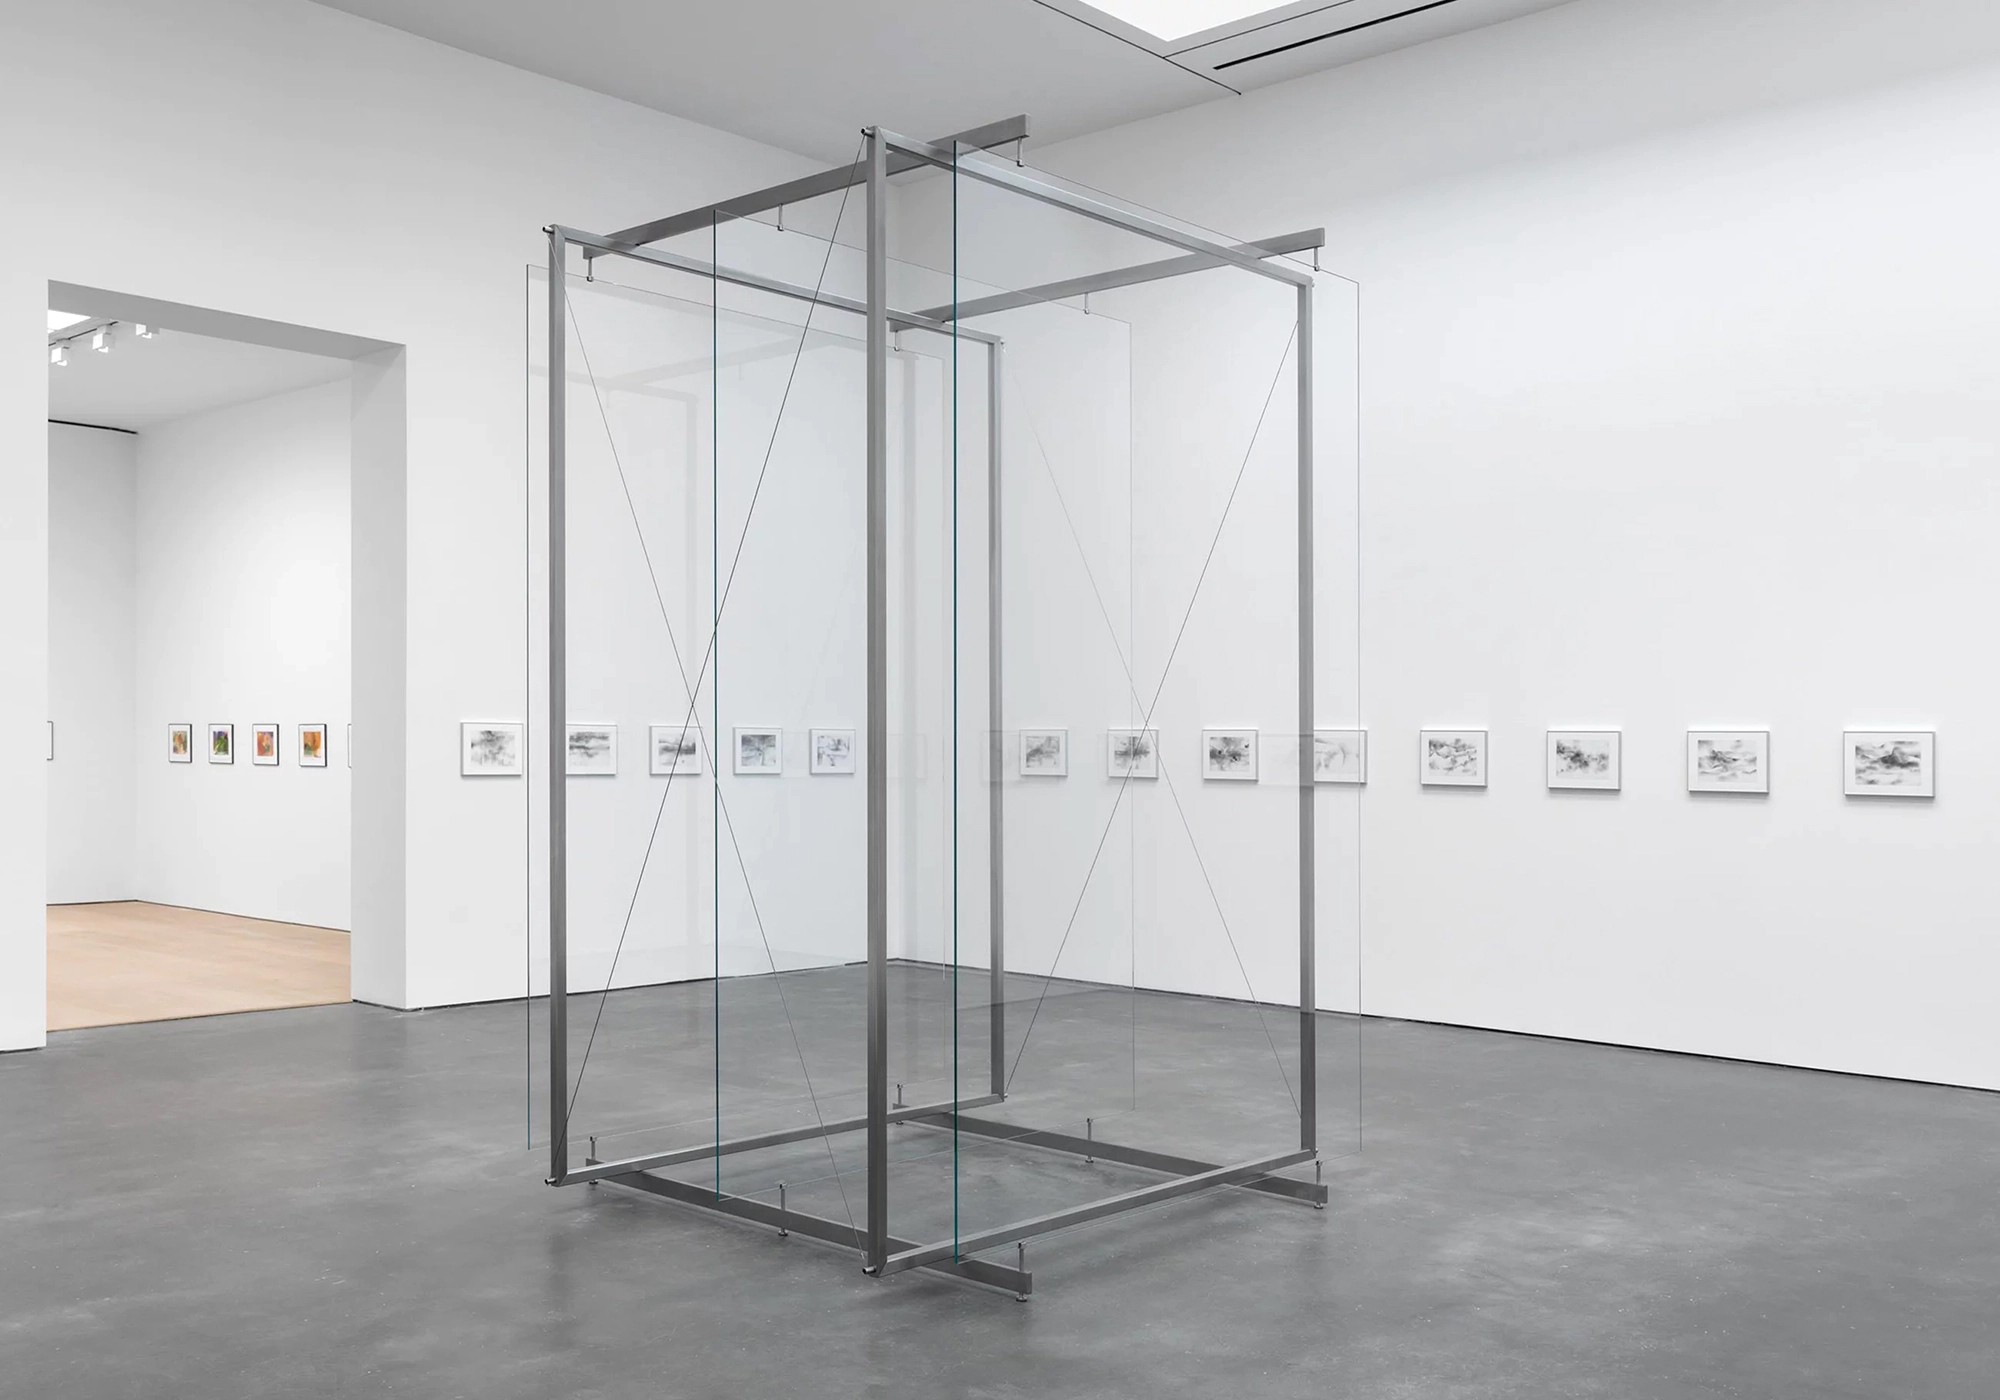 Οι Ανατολικογερμανοί: Gerhard Richter – Ενα ιερό τέρας της σύγχρονης Τέχνης και το έργο του